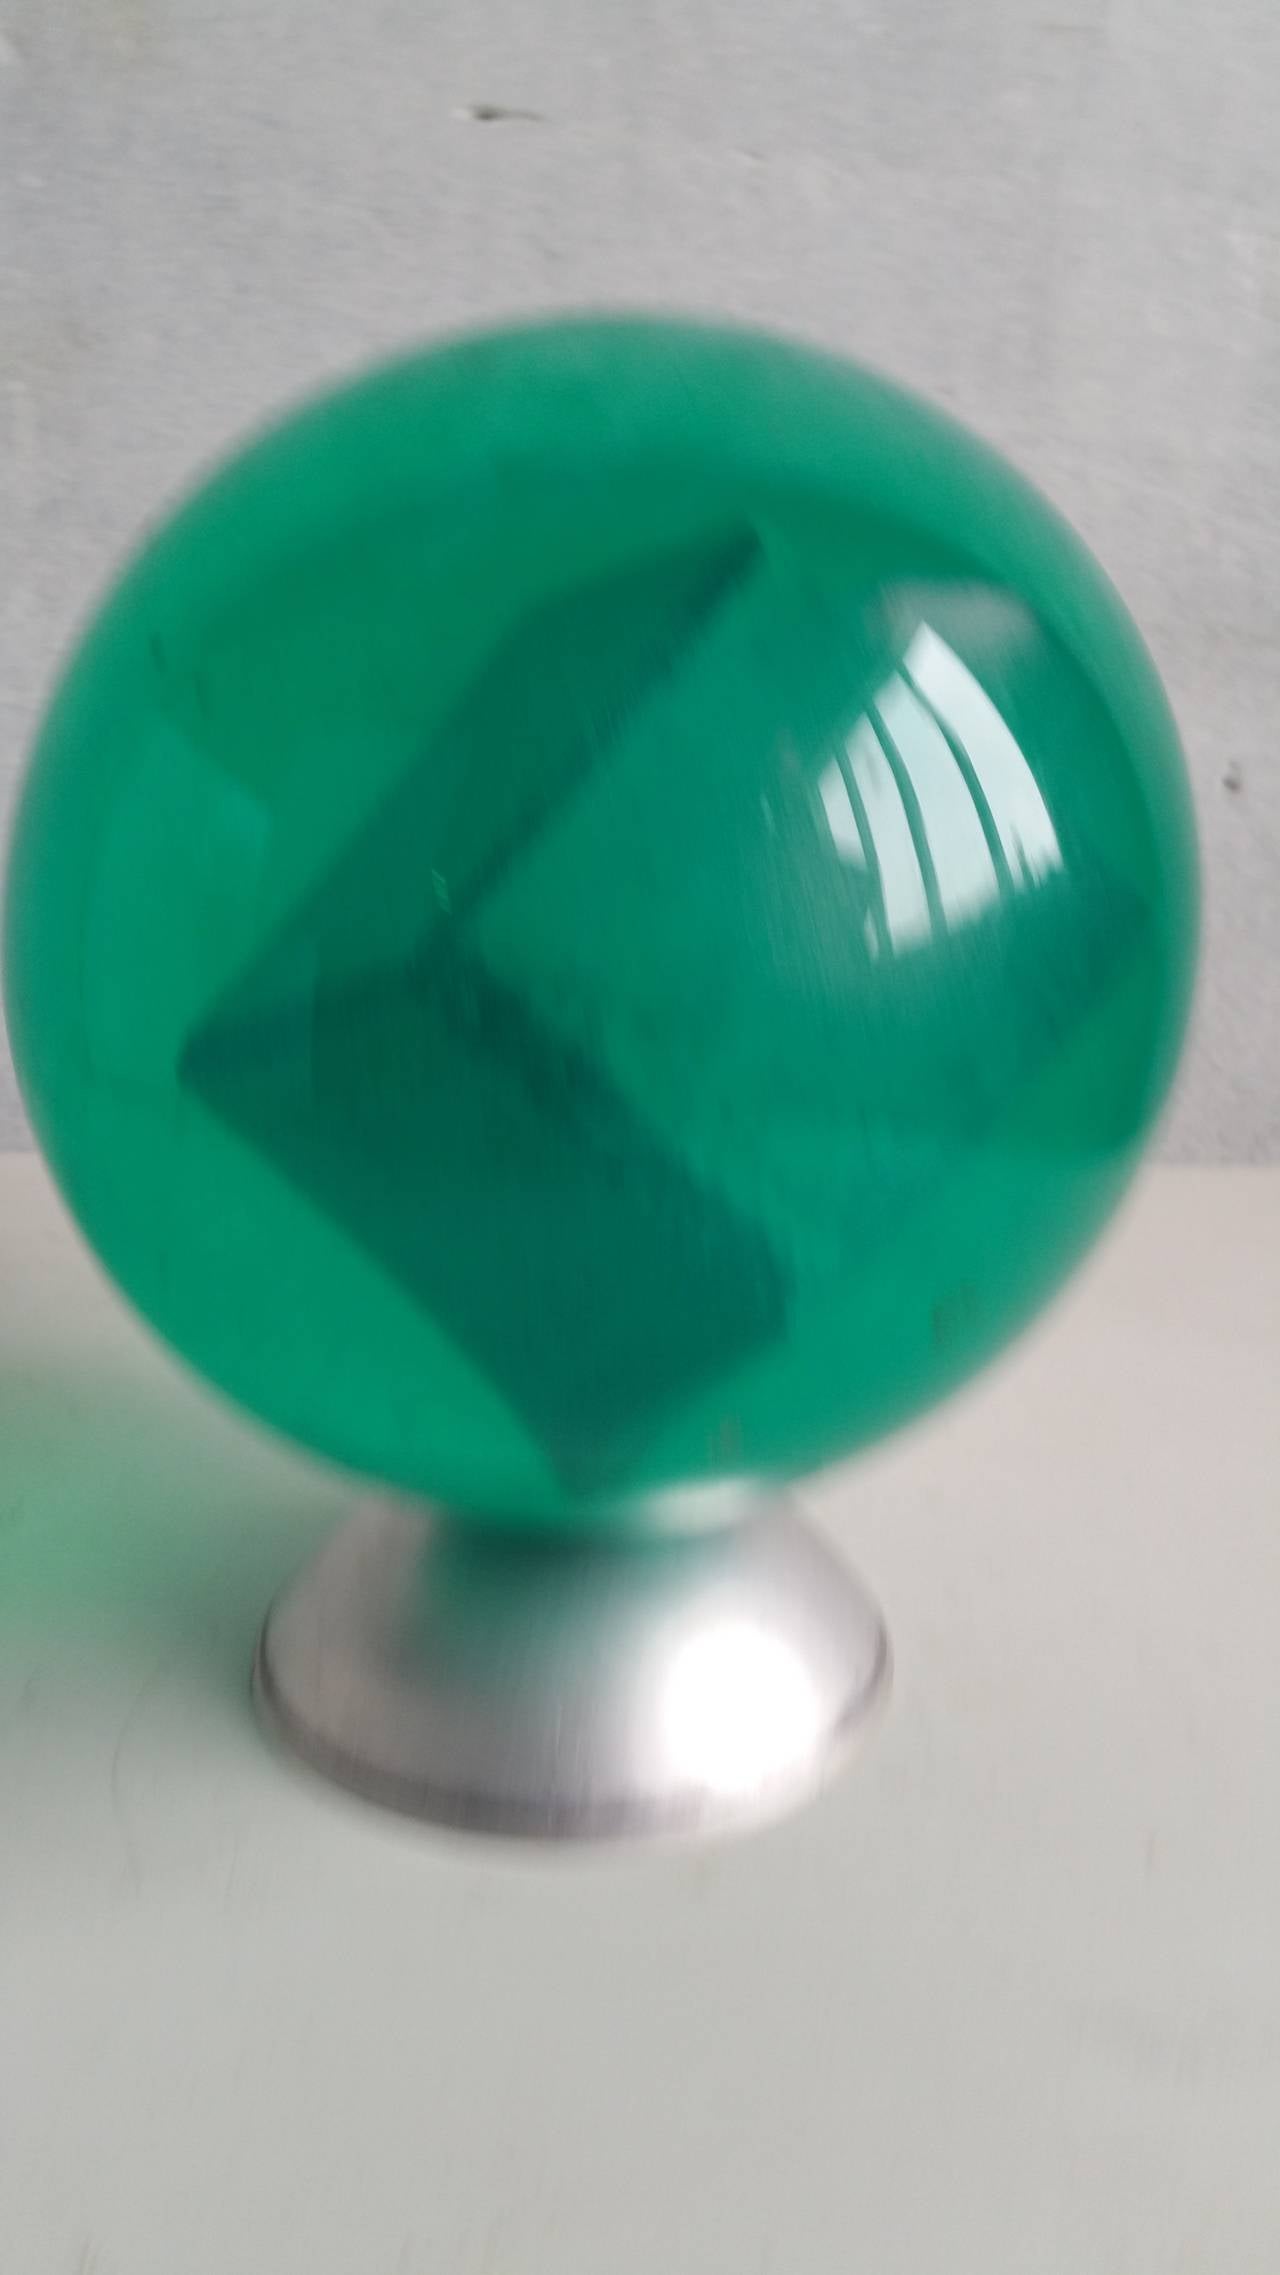 acrylic bowling ball